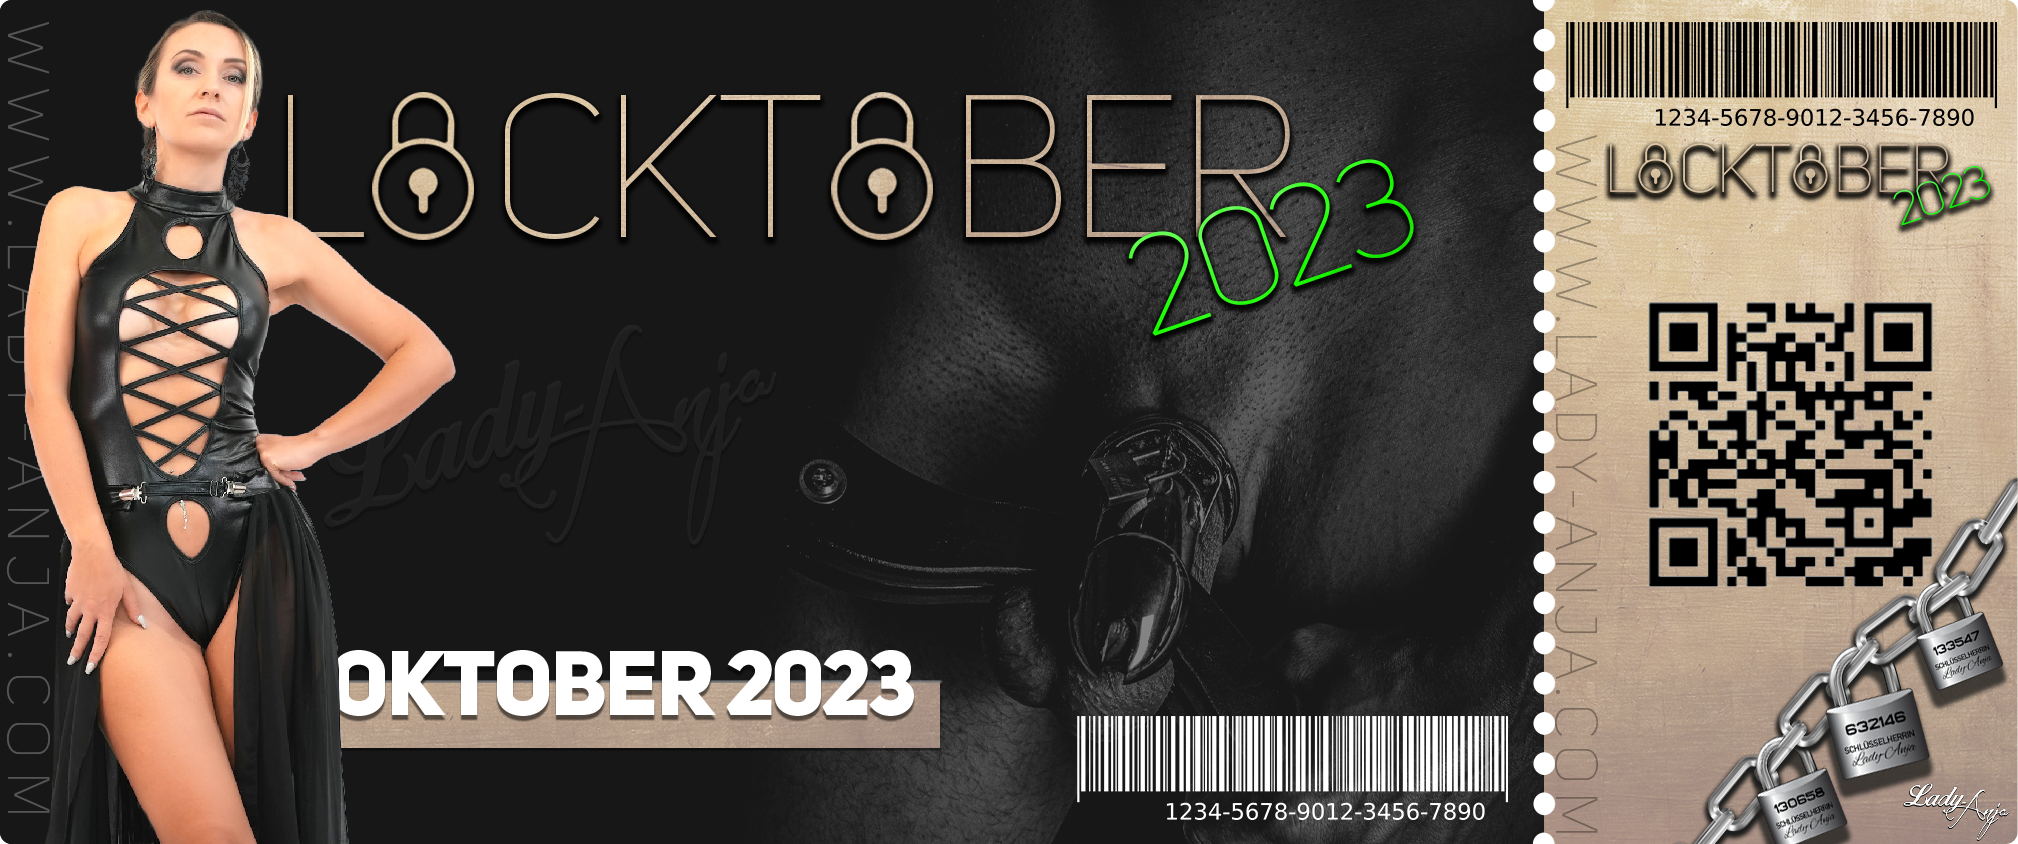 Locktober 2023 Teilnahme-Ticket